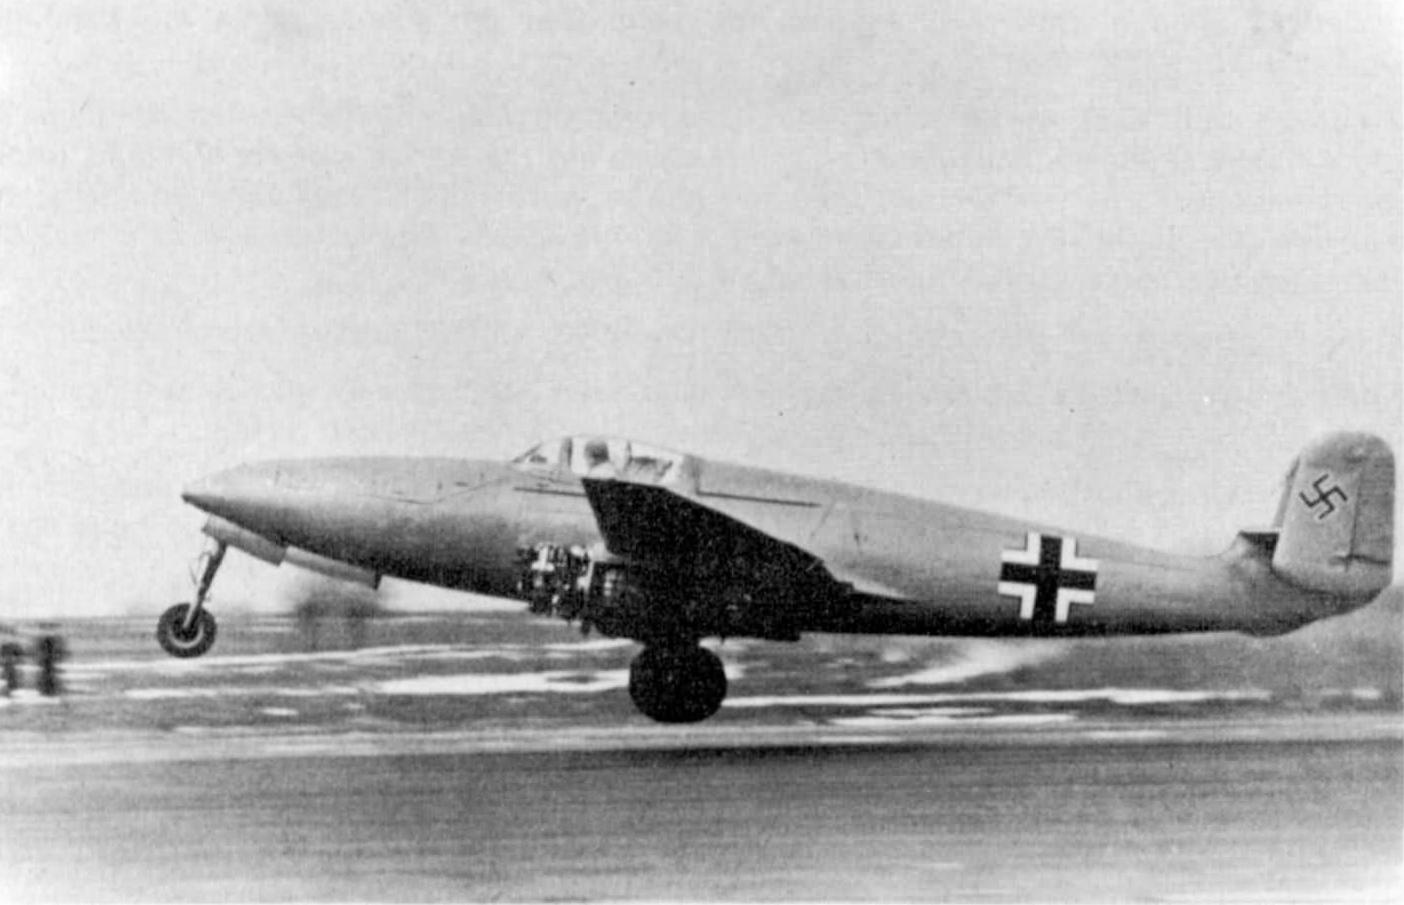 Рис. 1 первый полёт He 280V1 c реактивными двигателяим Heinkel HeS 8A, 2 апреля 1941 года. Силовая установка в целях лучшего охлаждения еще не получила капотов